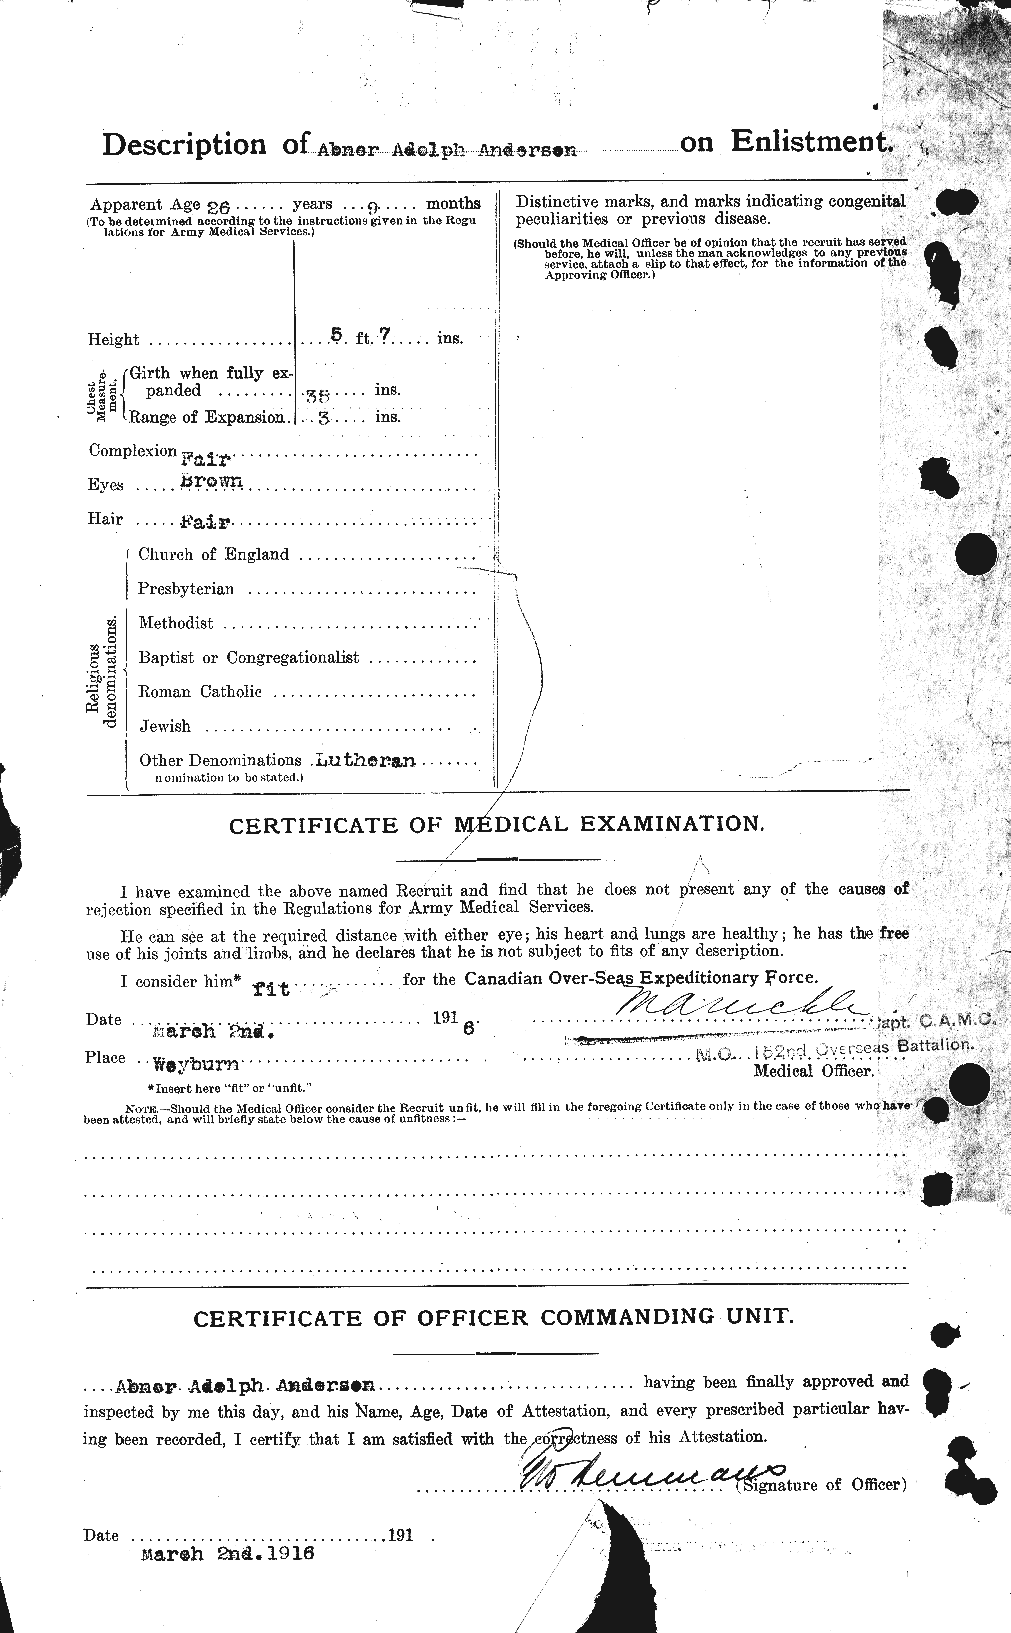 Dossiers du Personnel de la Première Guerre mondiale - CEC 209583b